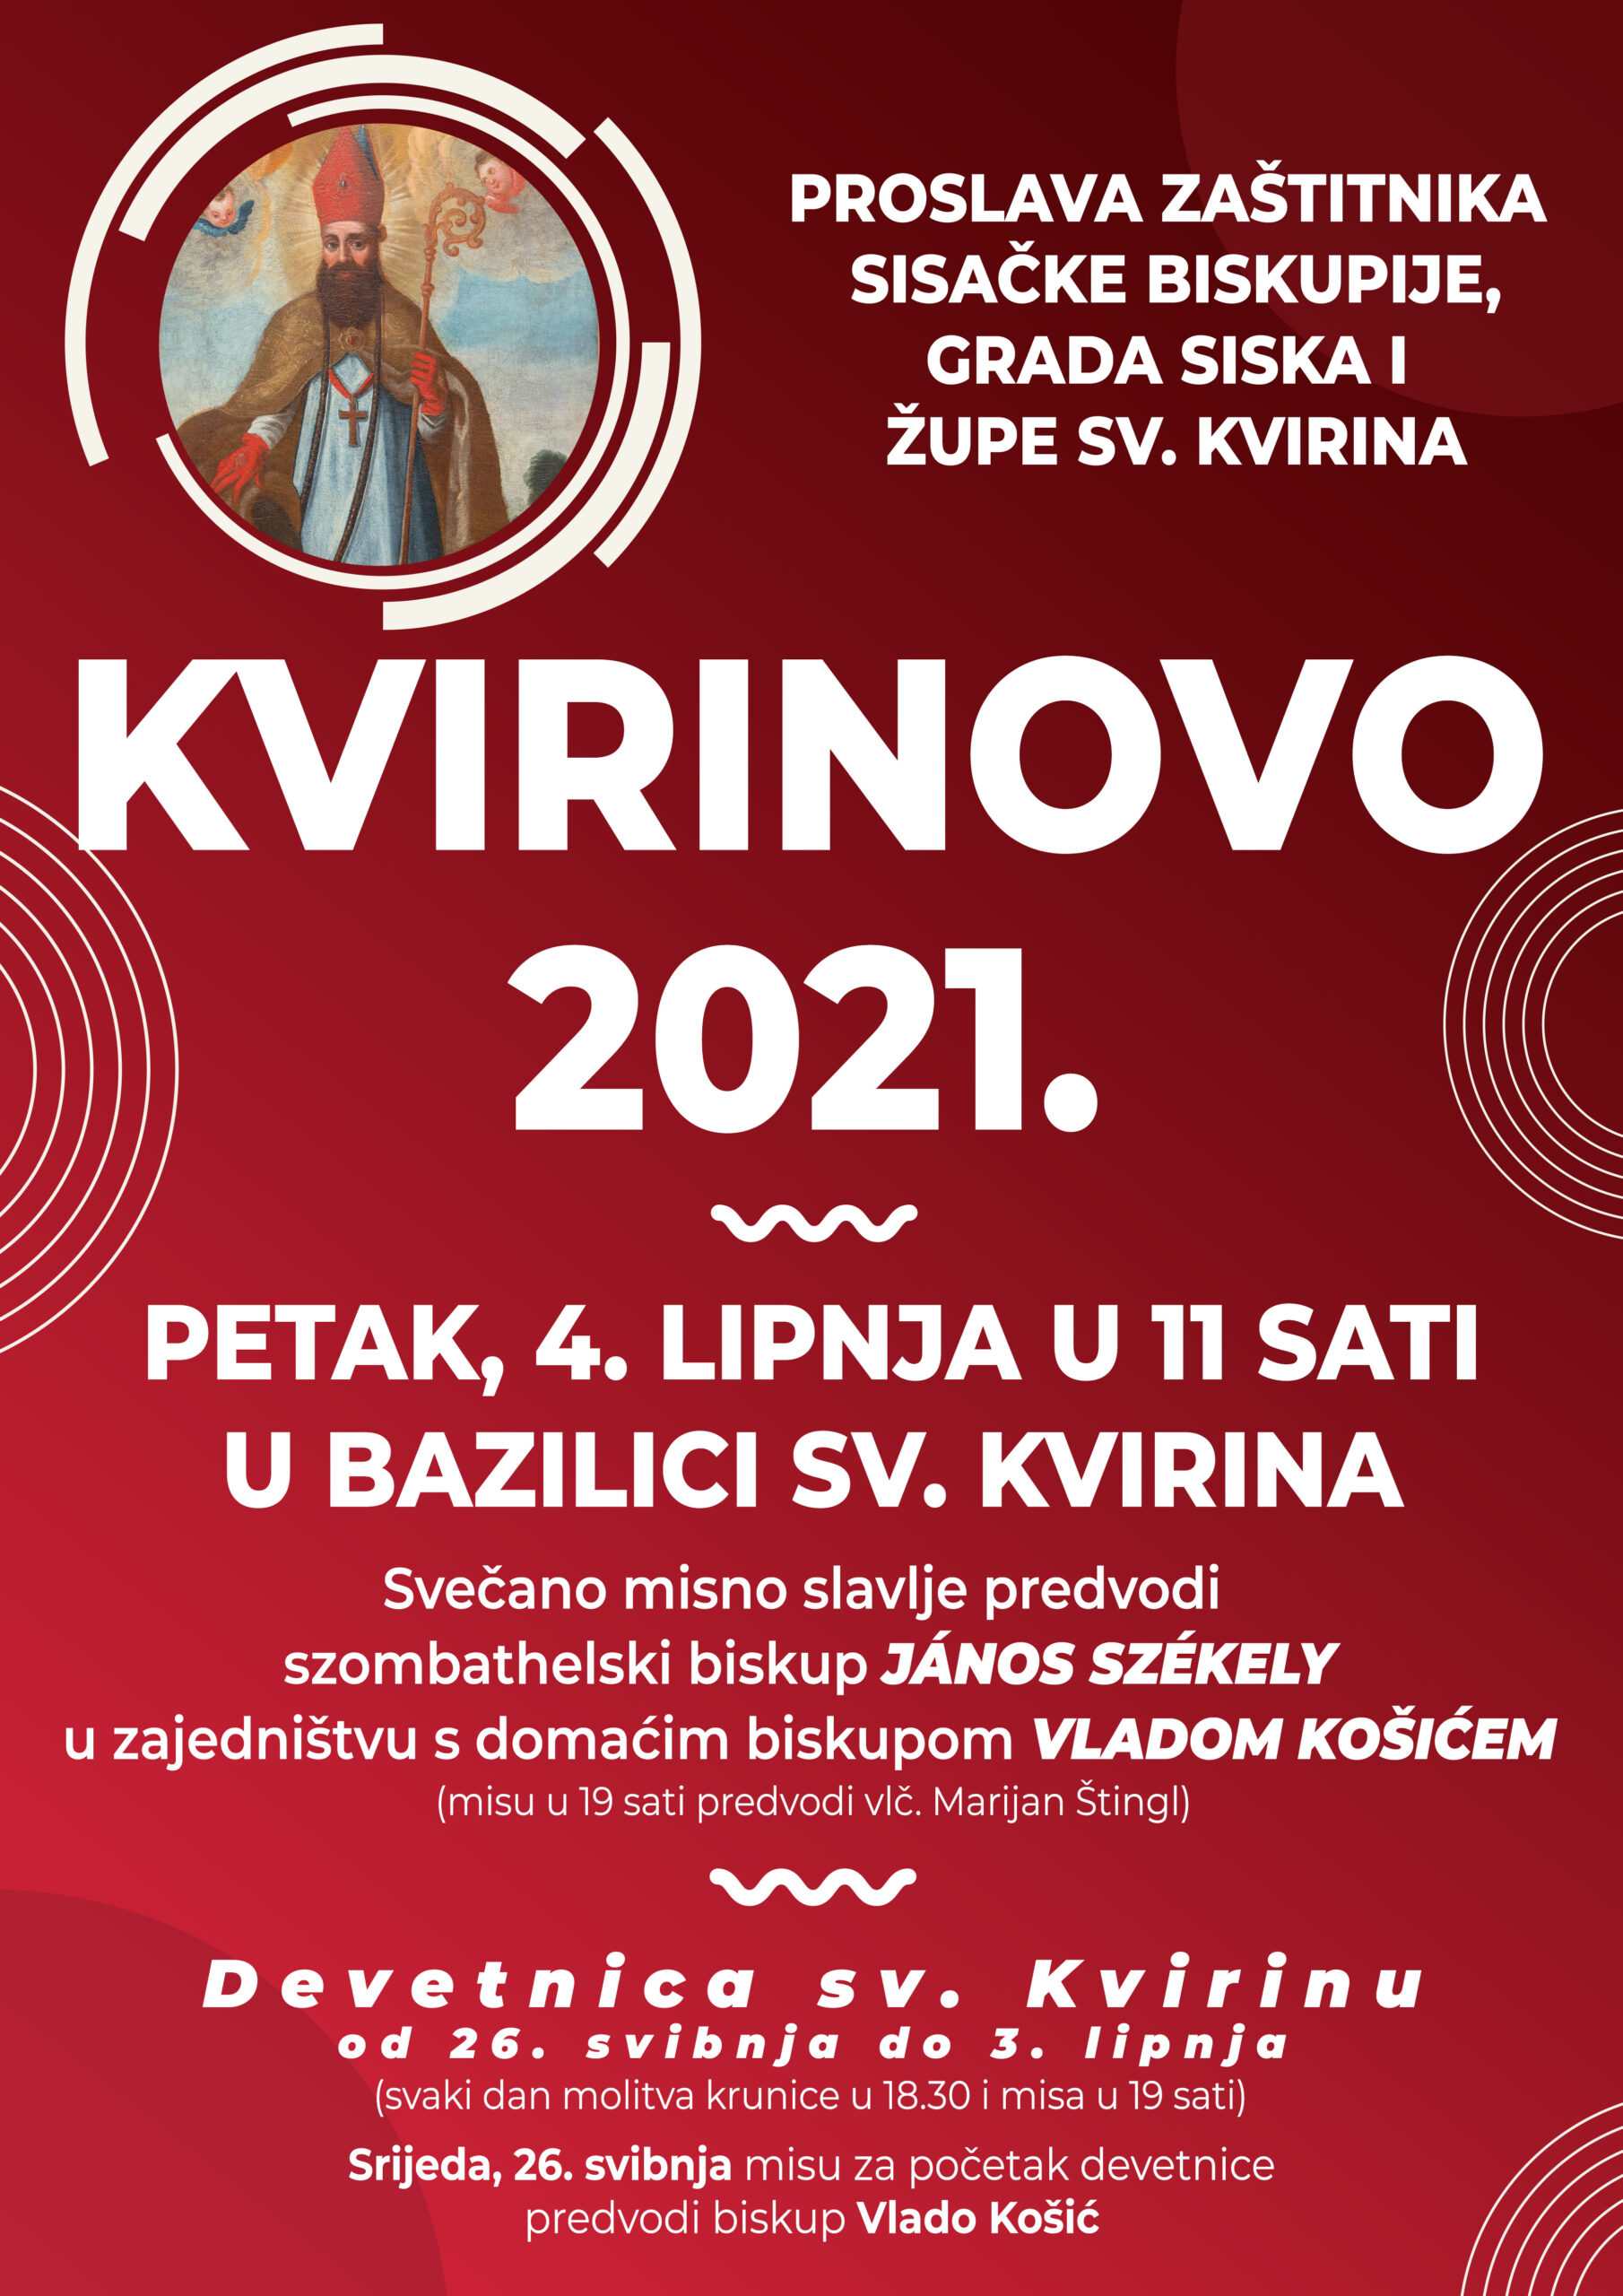 You are currently viewing U petak je Blagdan sv. Kvirina, zaštitnika Sisačke biskupije i Grada Siska